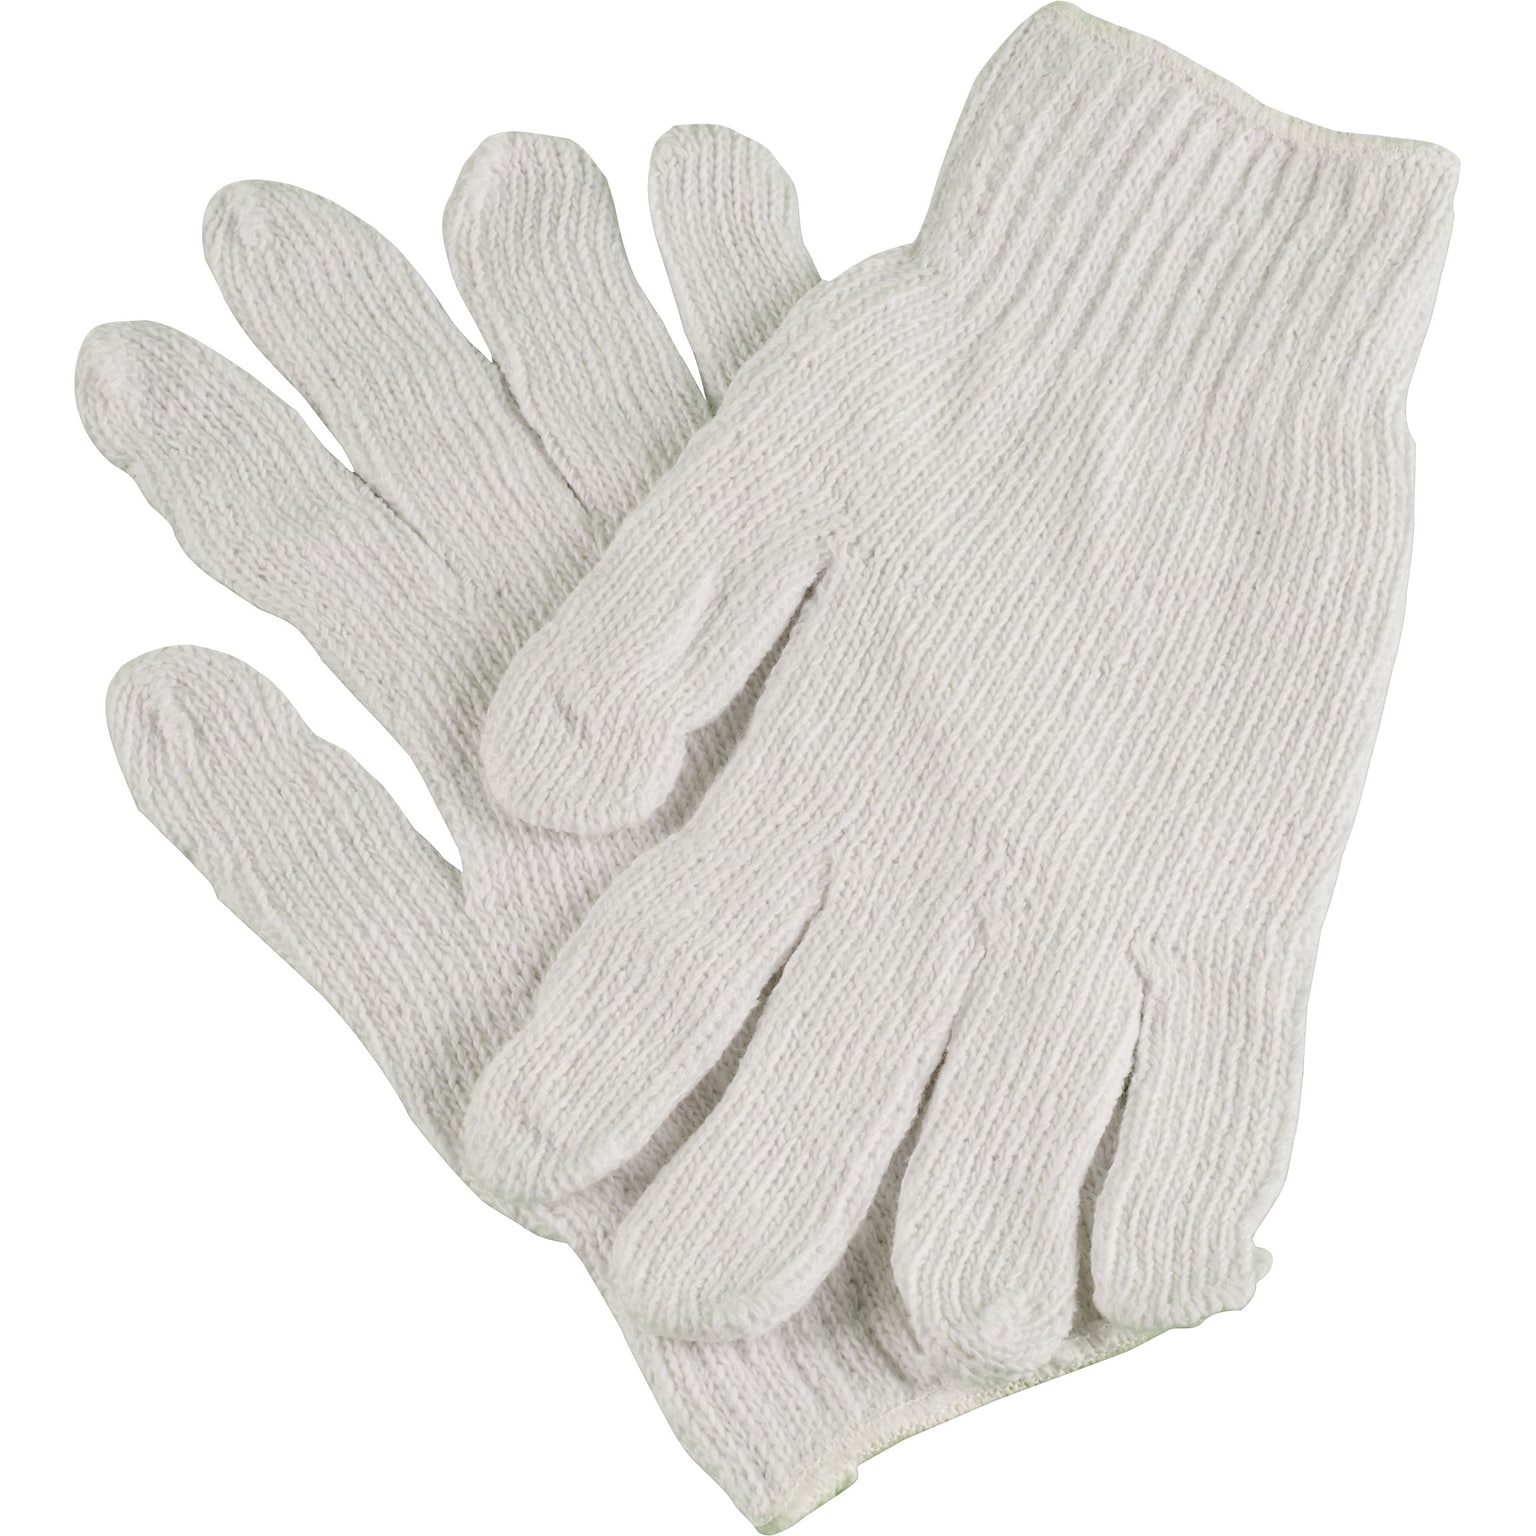 Ambitex® Work Gloves, Cotton Polyester Blend, Medium, White, 12/Bag (CTPS400MD/NLW)